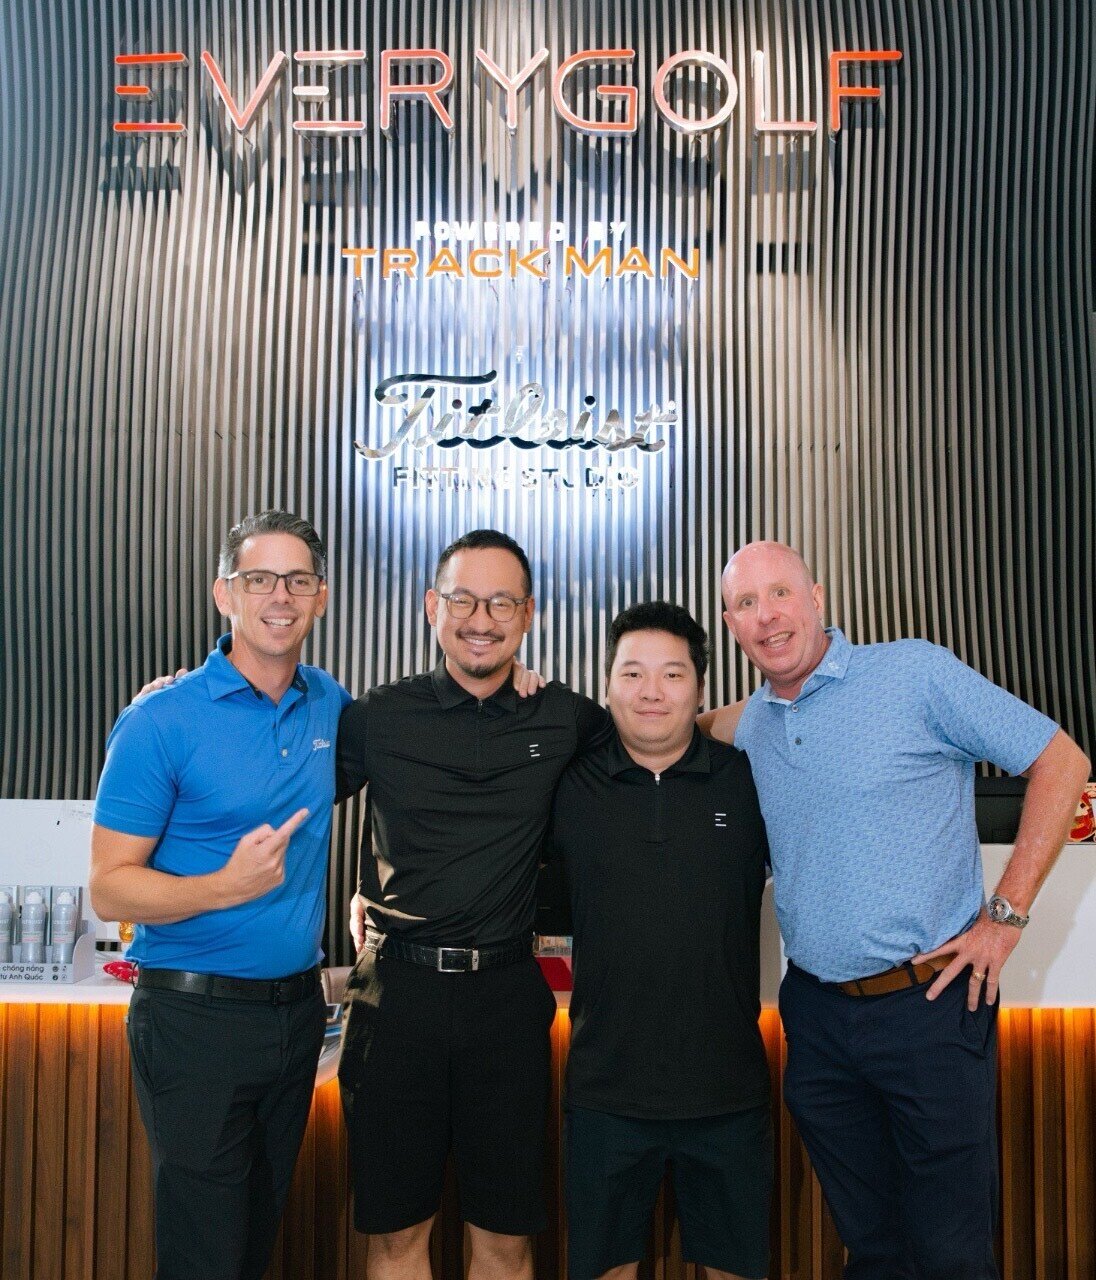 Everygolf &Titleist Việt Nam chính thức ra mắt Titleist Fitting Studio - " Điểm nhấn" đặc biệt cho sự tận tâm và nỗ lực của Everygolf đến với khách hàng